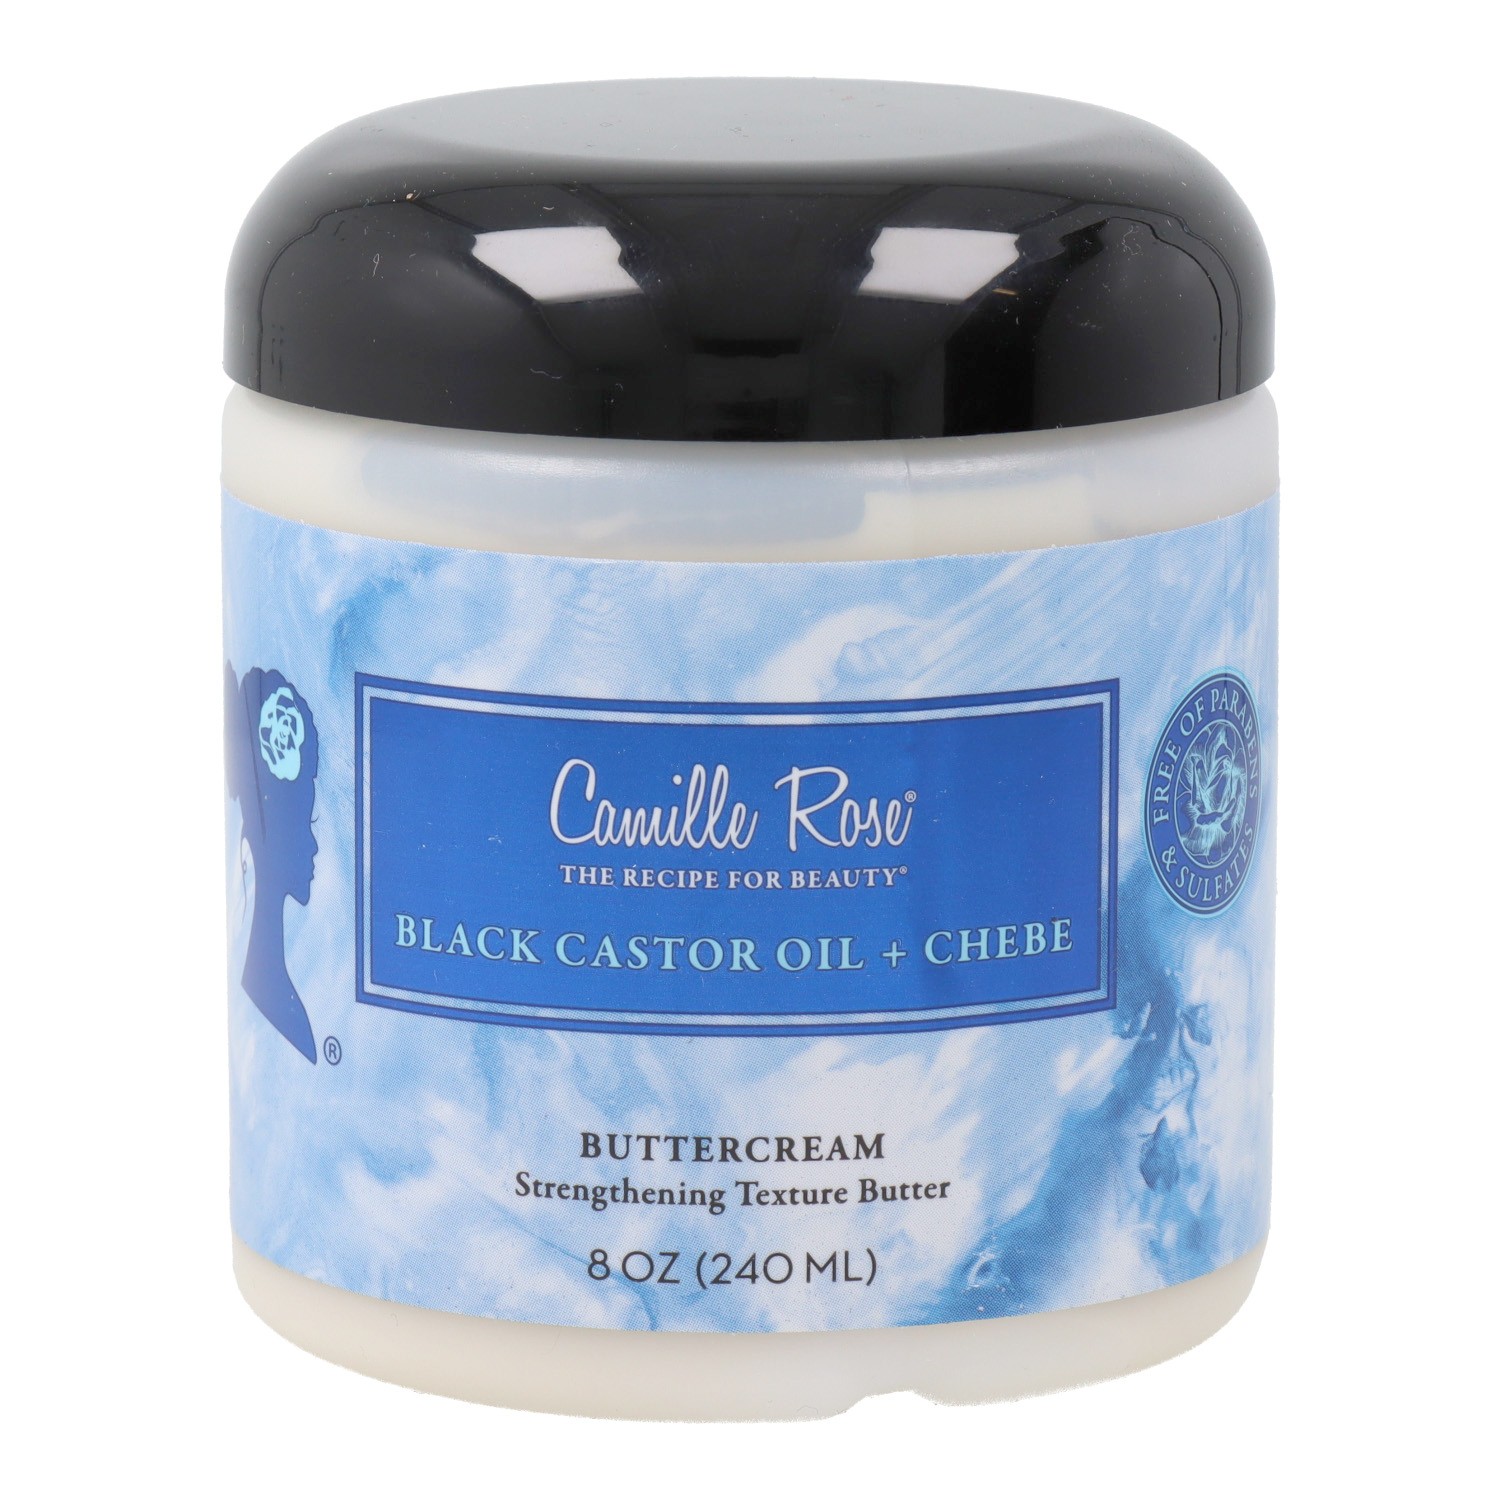 Camille Rose Black Castor Oil Chebe Strengthening Texture Butter 240Ml